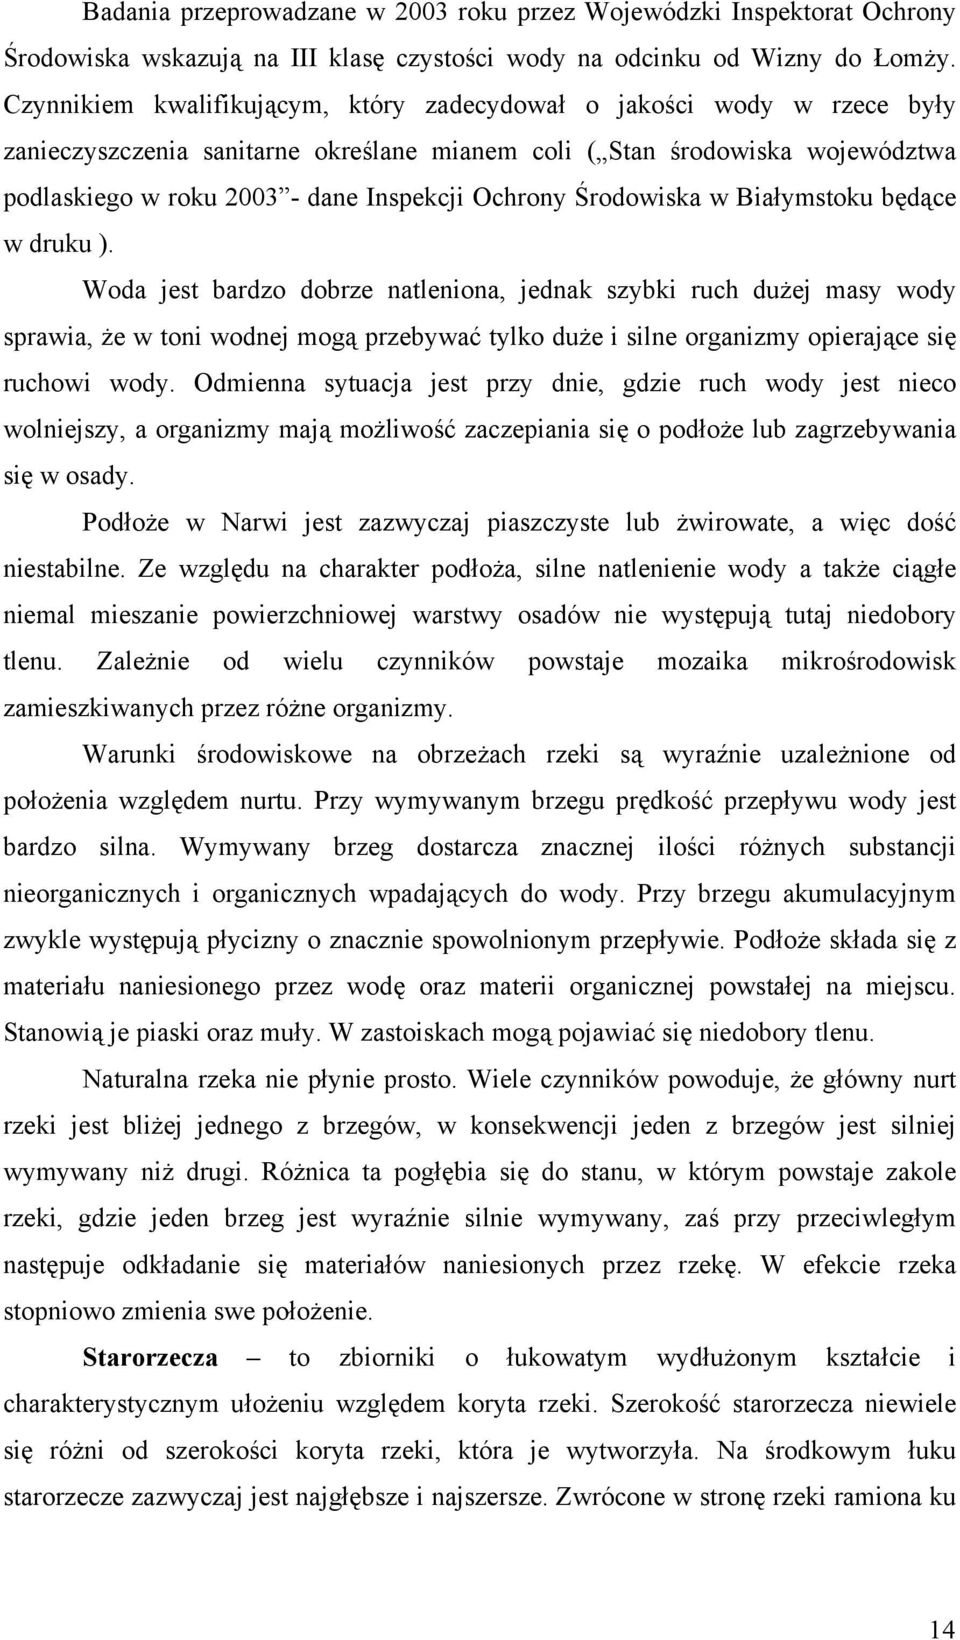 Ochrony Środowiska w Białymstoku będące w druku ).